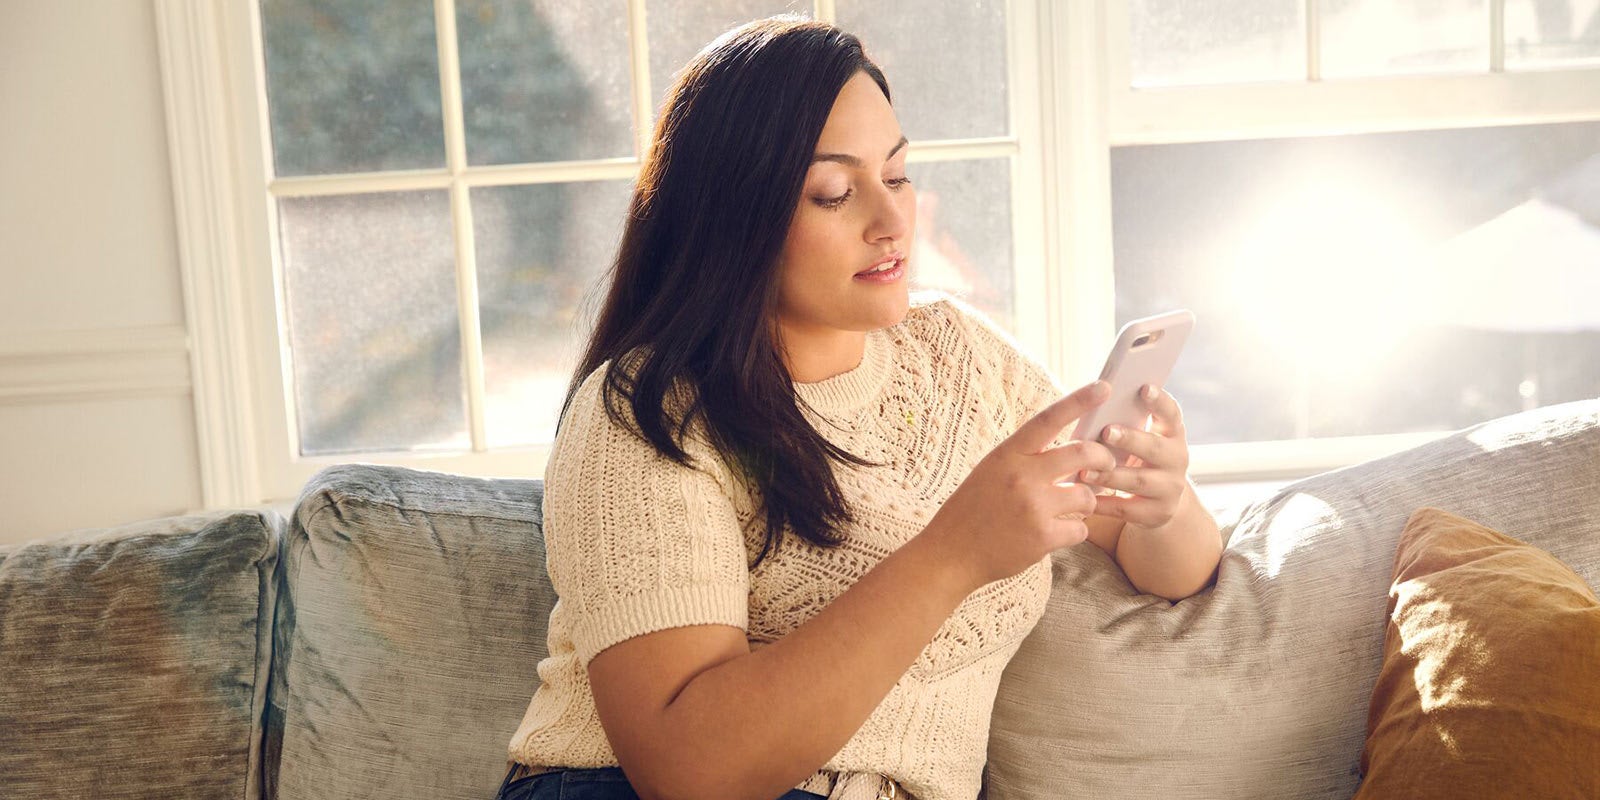 Femme assise sur un canapé et regardant son téléphone portable